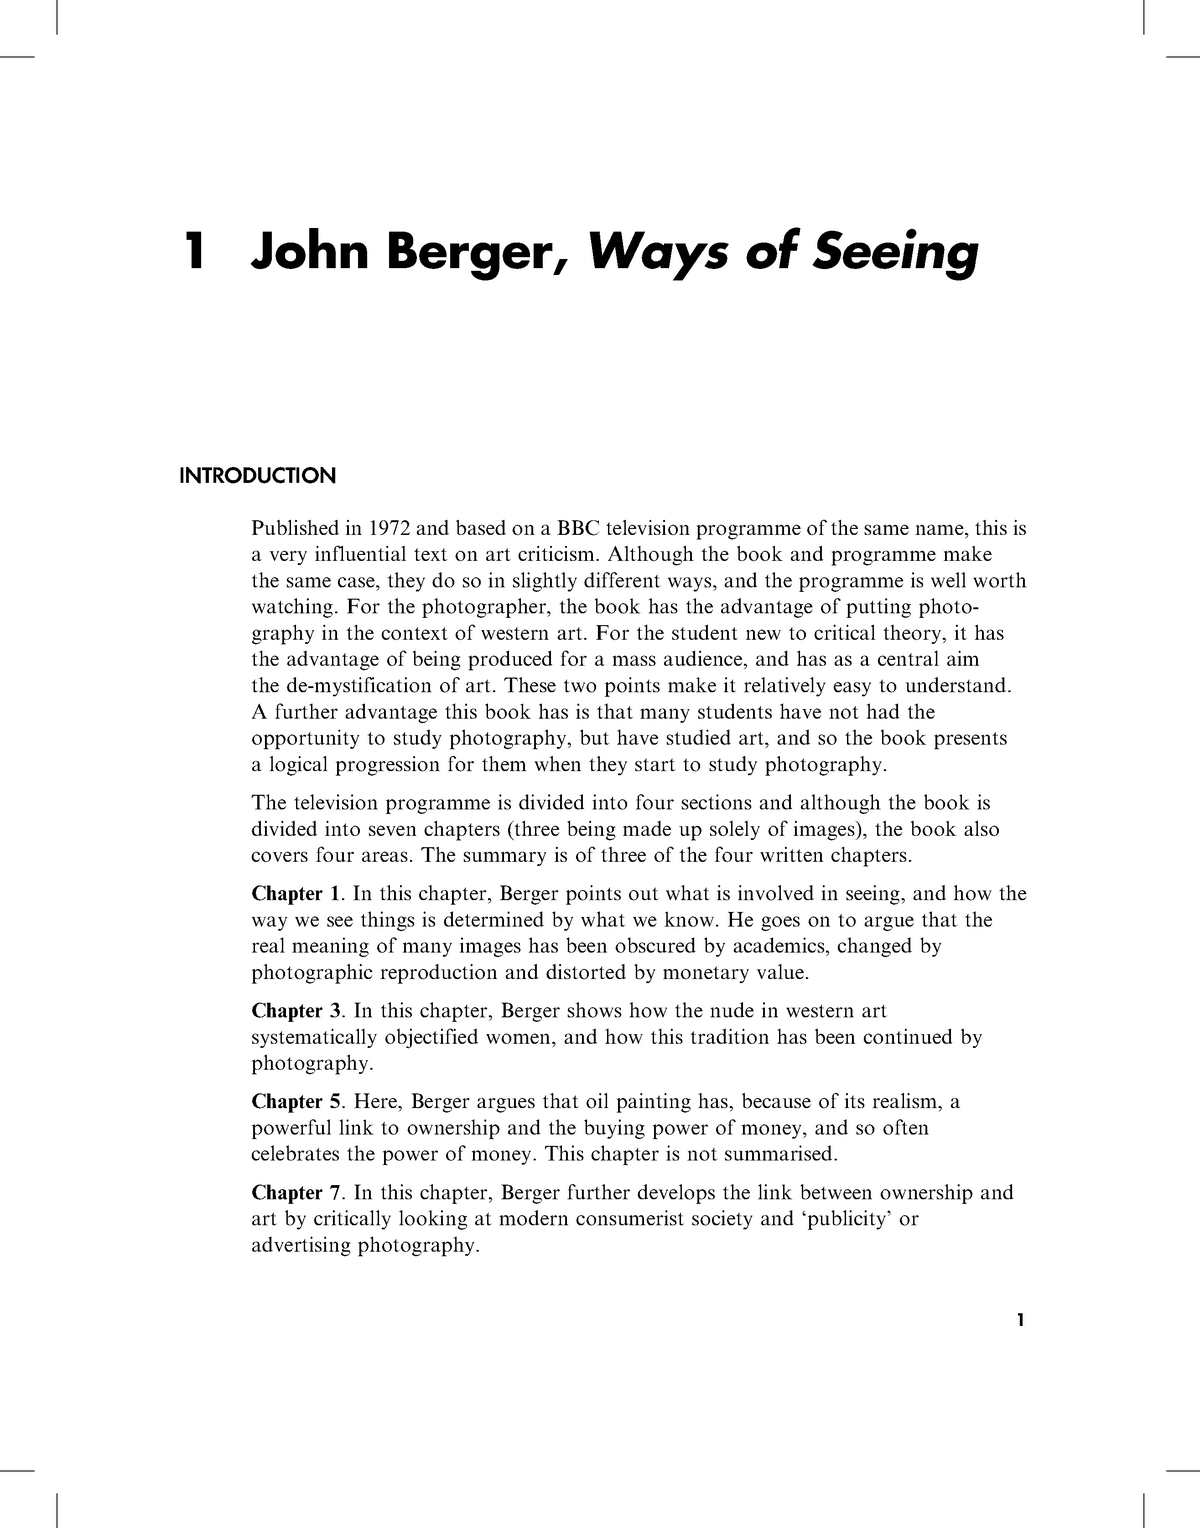 john berger ways of seeing analysis